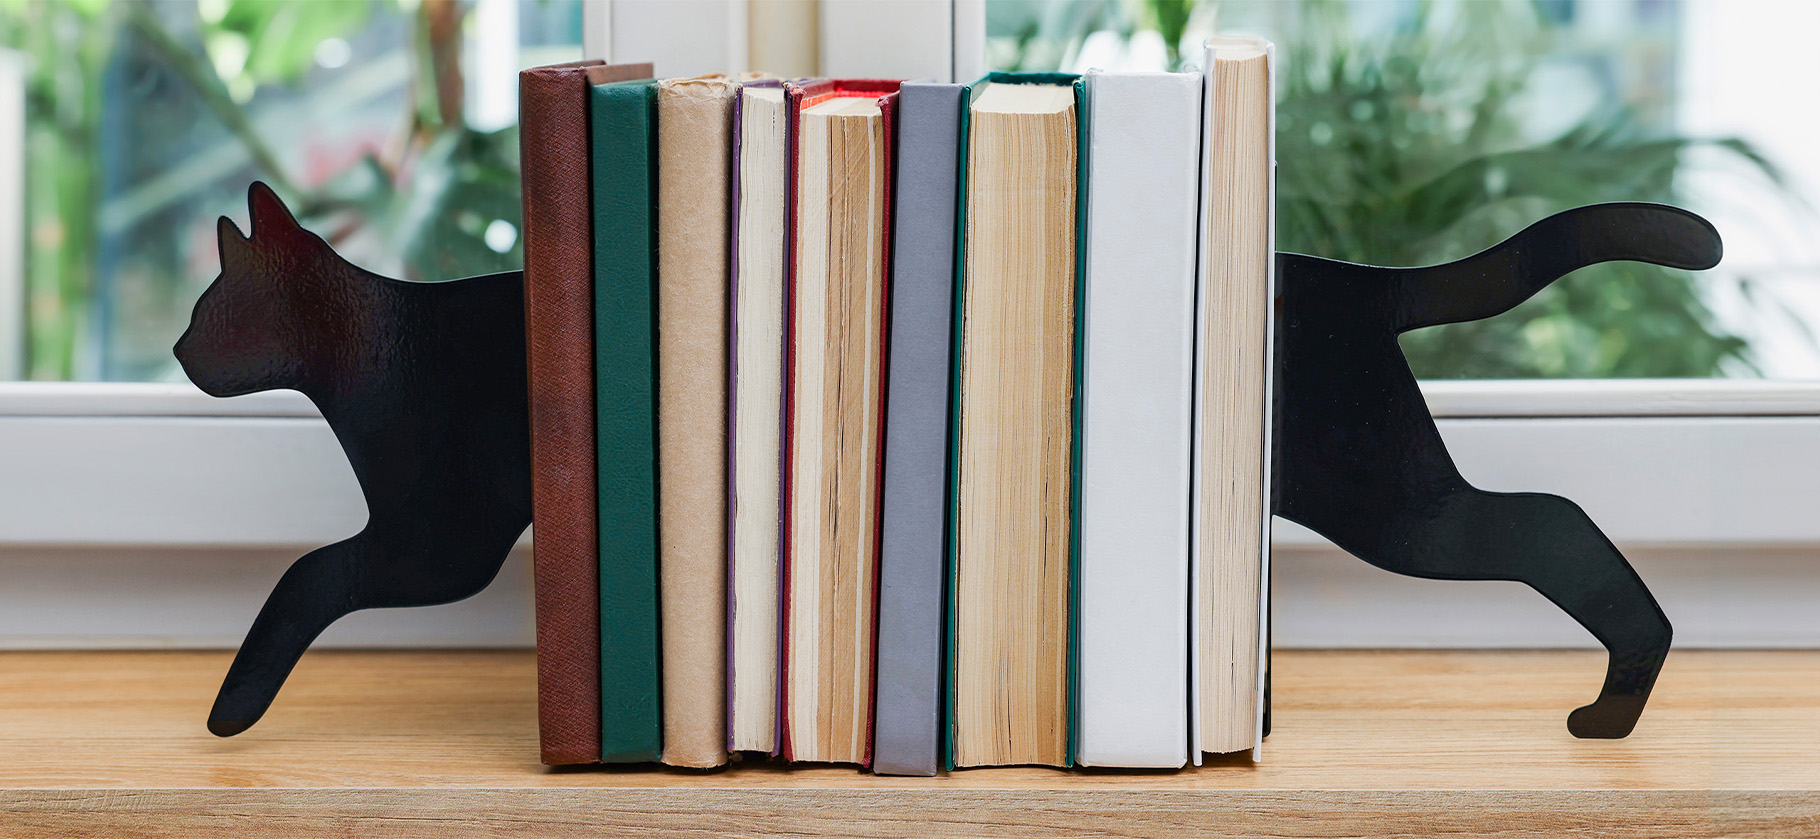 Как хранить книги дома: 10 необычных вариантов